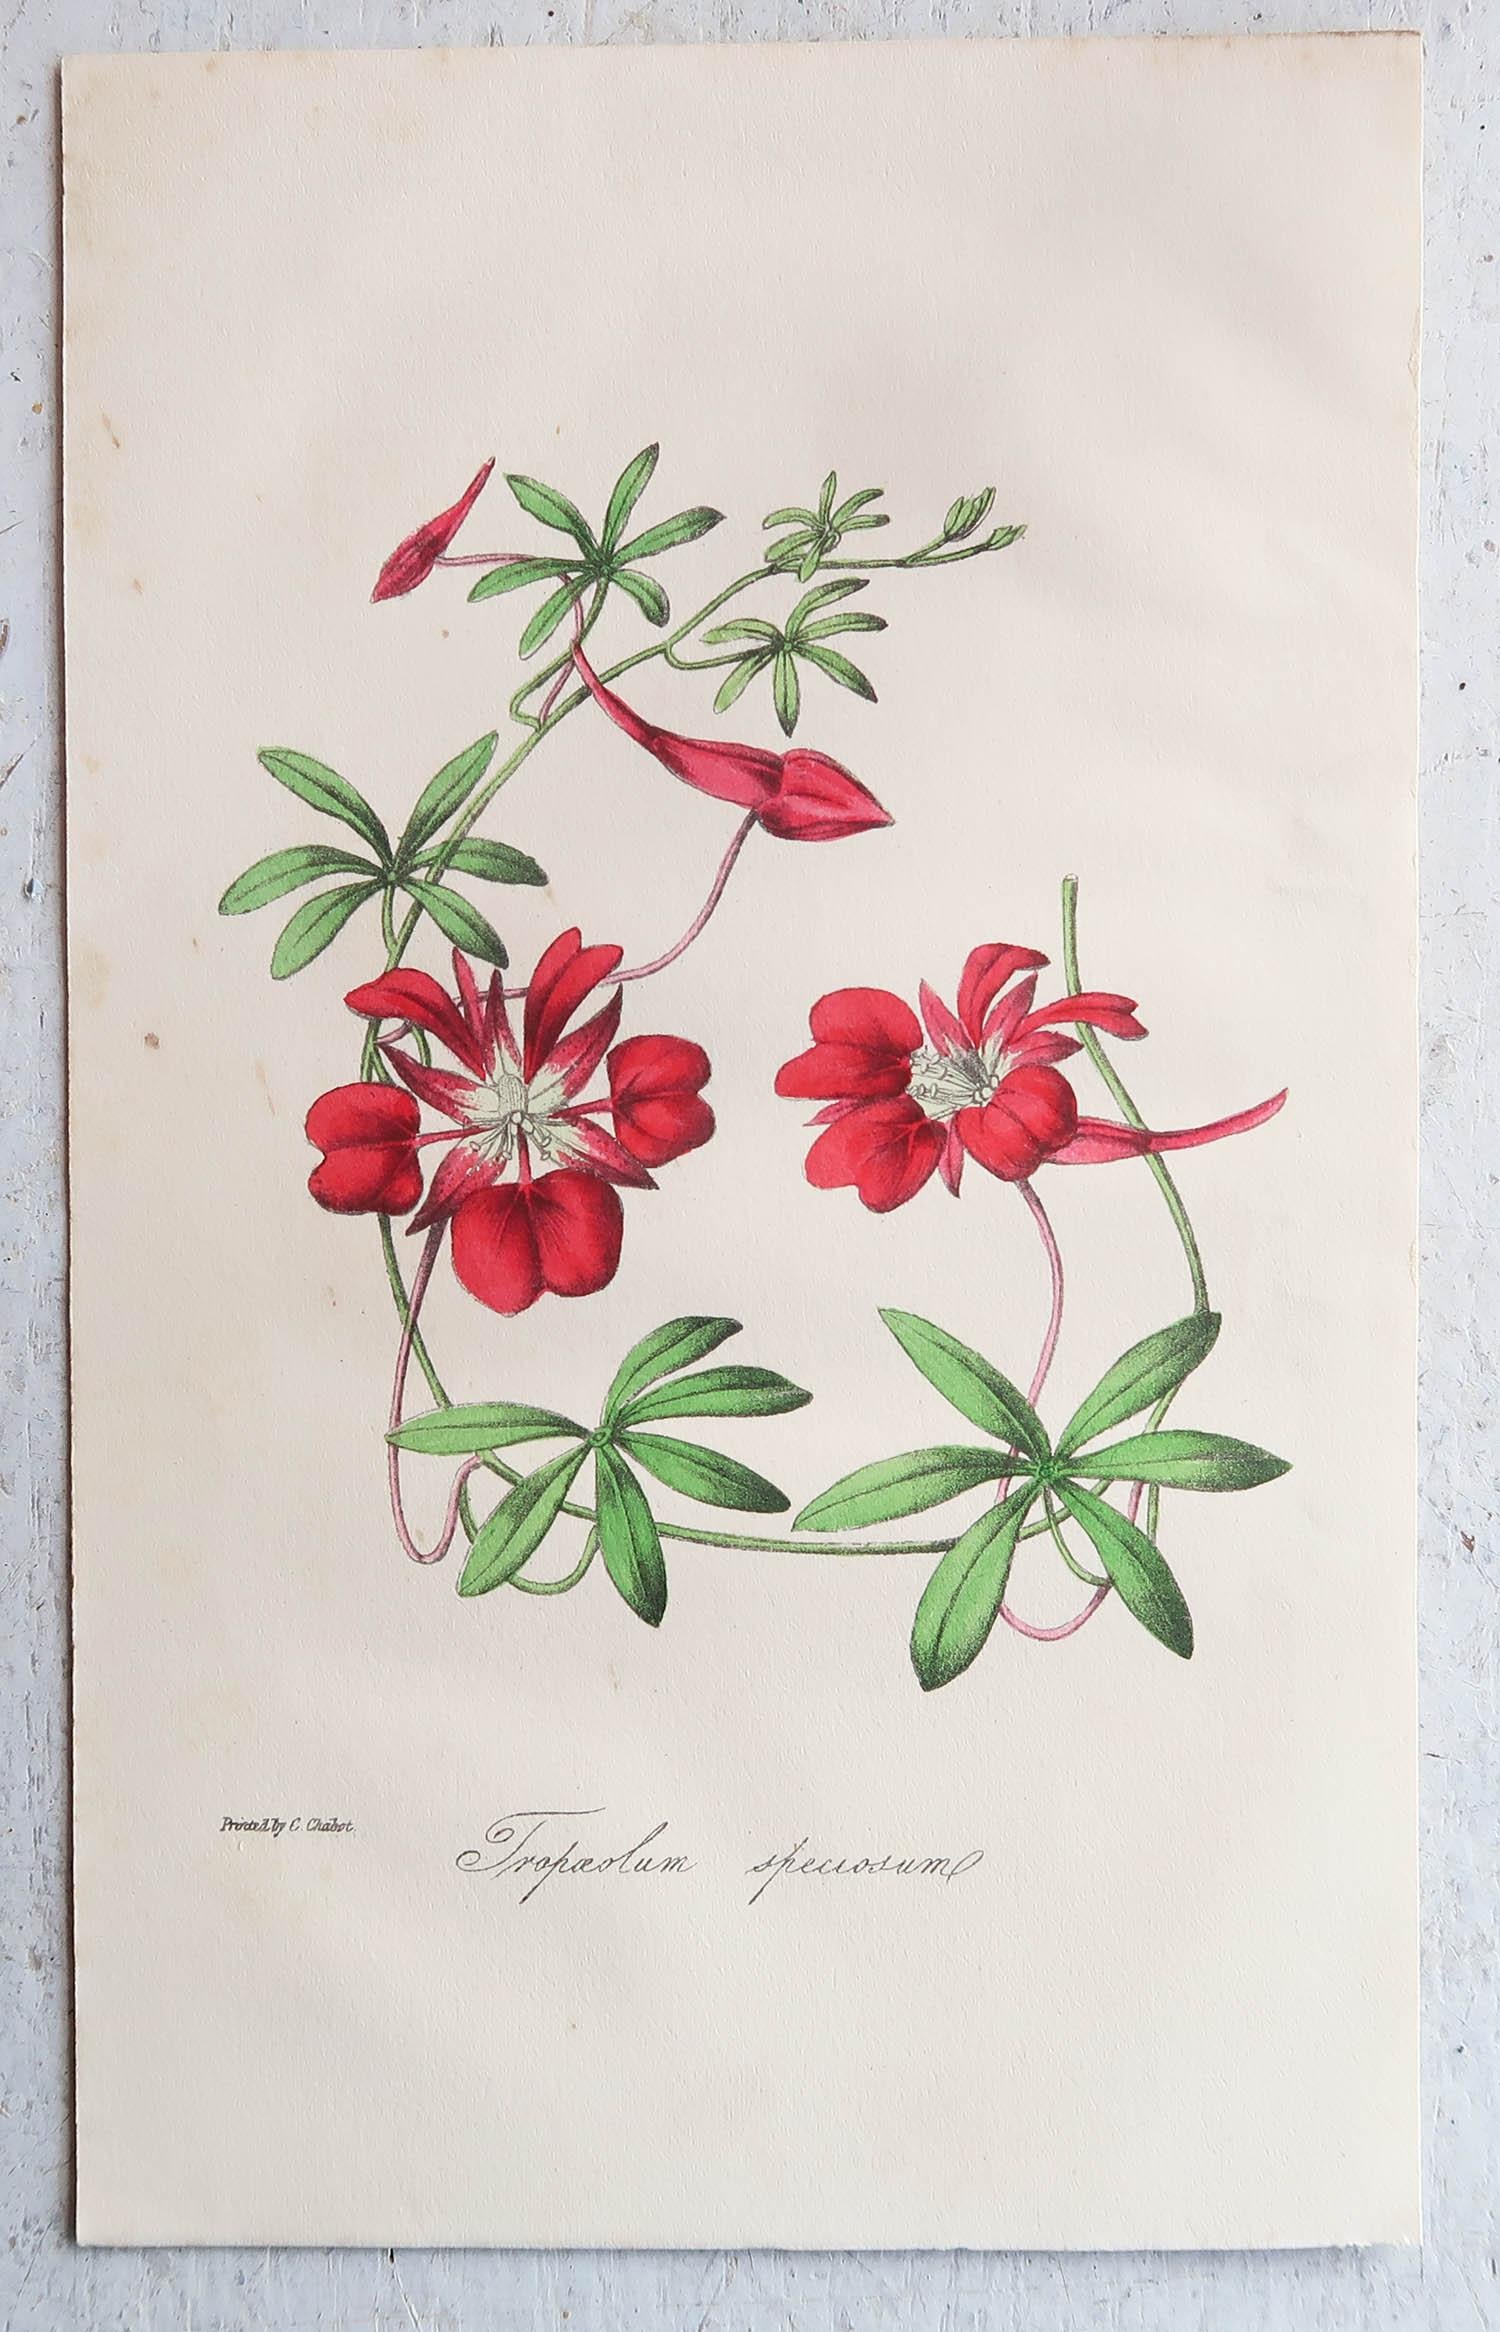 Wunderschöner Satz von 12 botanischen Drucken.

Lithografien von Alfred Adlard, J. Parkin und D. Hayes

Nach C.W Harrison und Miss E.Hogg

Original-Handfarbe

Veröffentlicht, um 1840

Ungerahmt.

Die angegebenen Maße beziehen sich auf einen